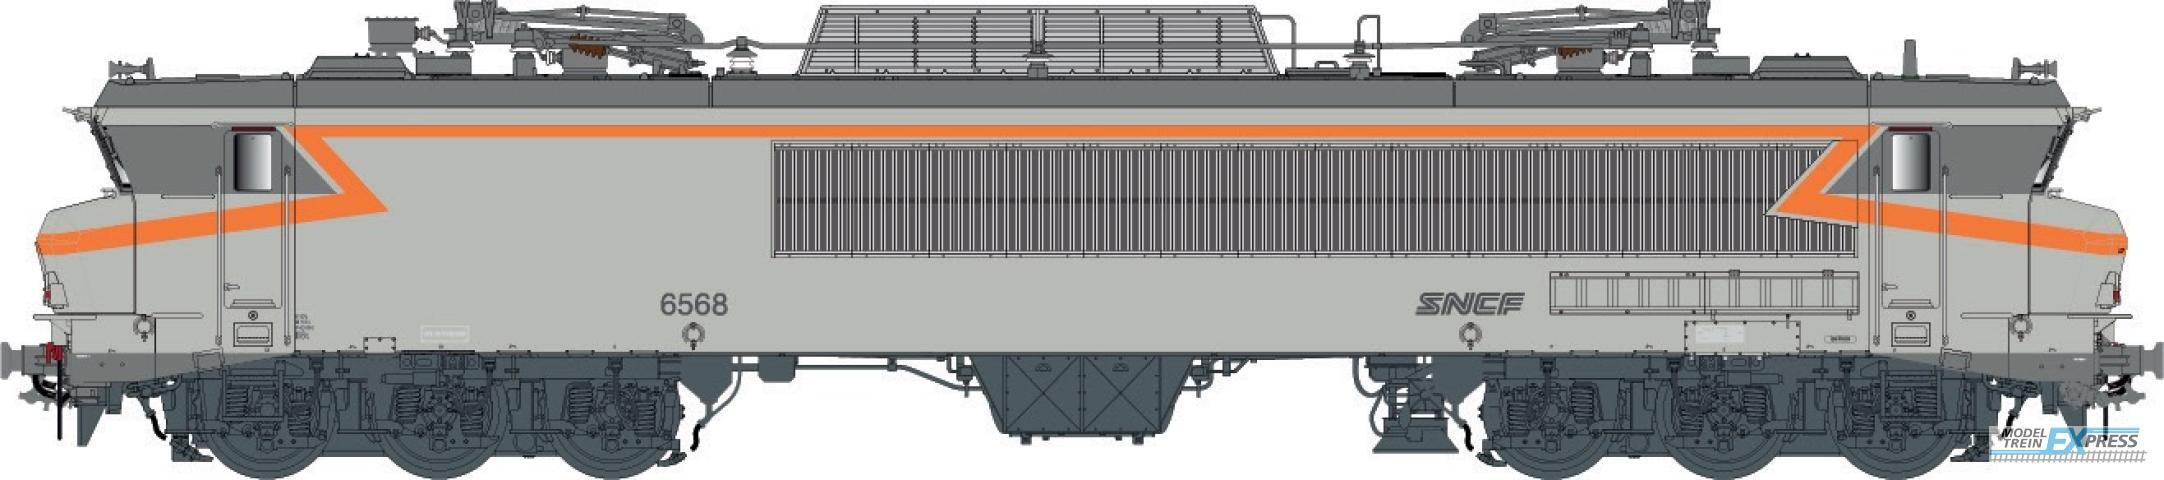 LS Models 10833 CC 6558, concrete gray, orange, noodle logo, Lyon-Mouche depot  /  Ep. IV-V  /  SNCF  /  HO  /  AC  /  1 P.